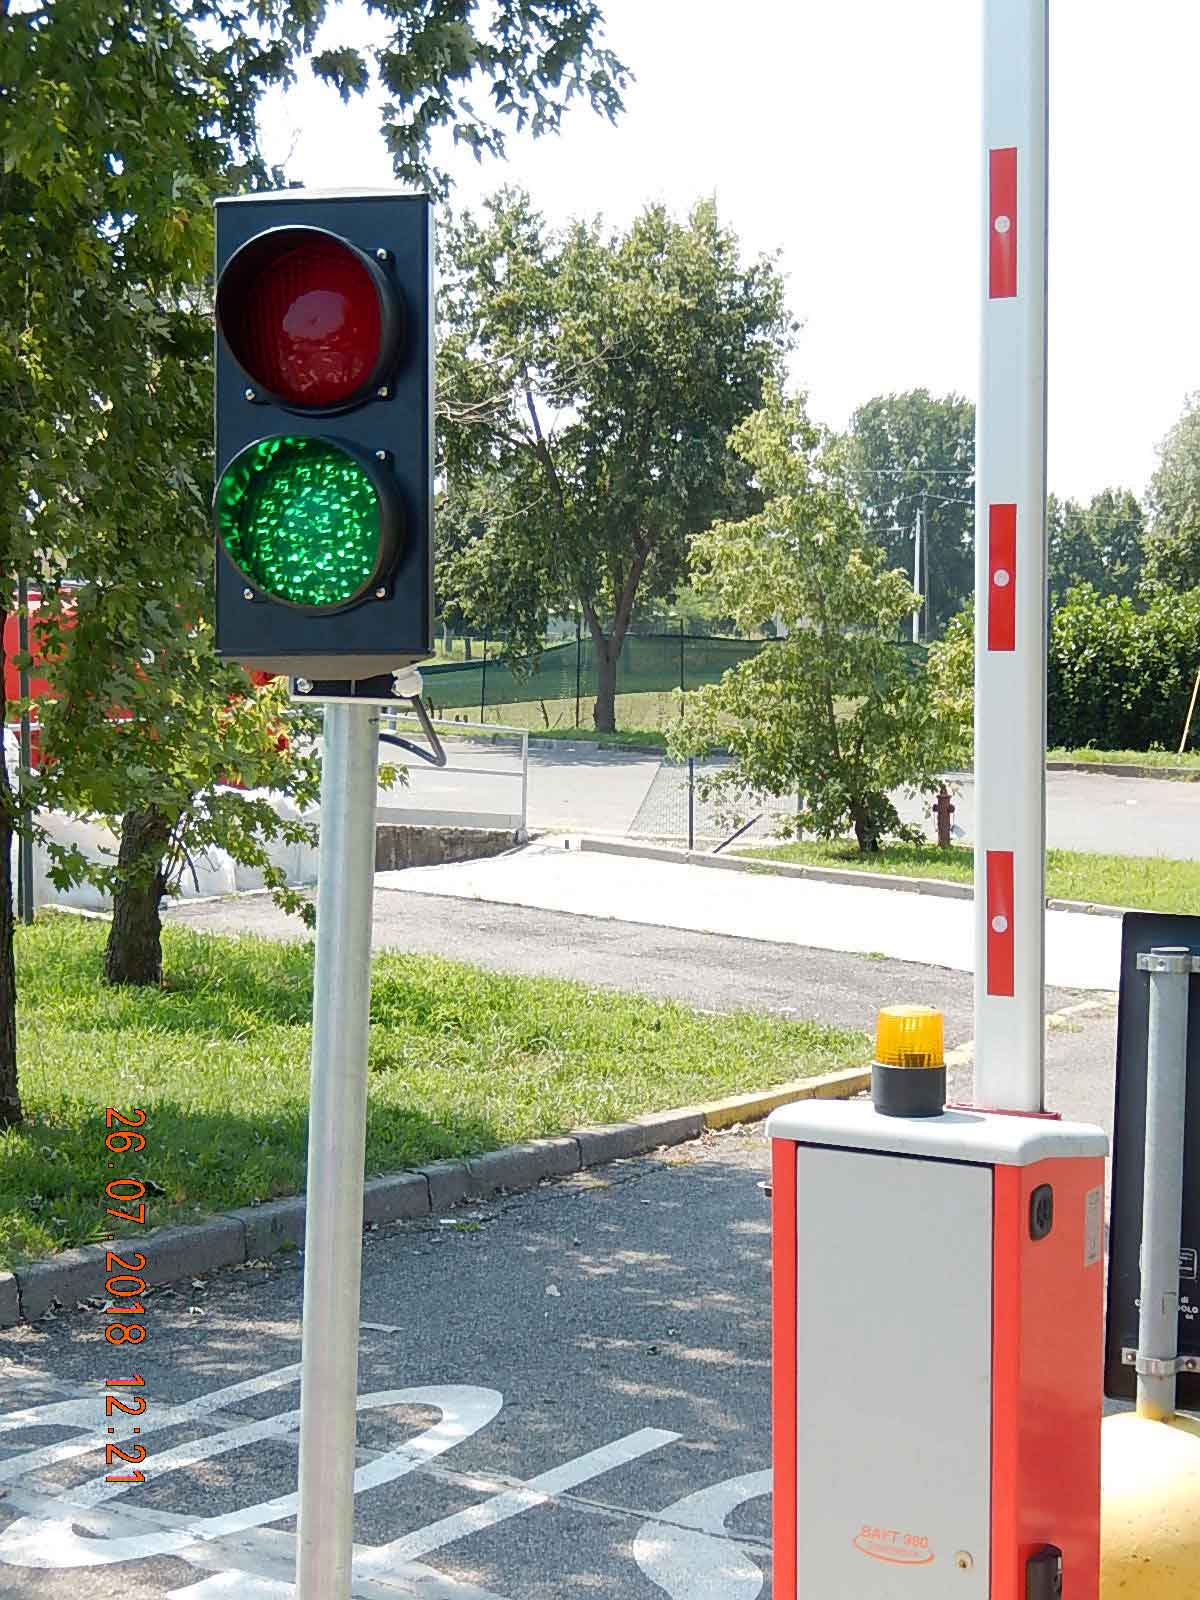 Avviso importante per i cittadini di Castenedolo! Dal lunedì 30 luglio un semaforo regolamenterà gli accessi al centro di raccolta.